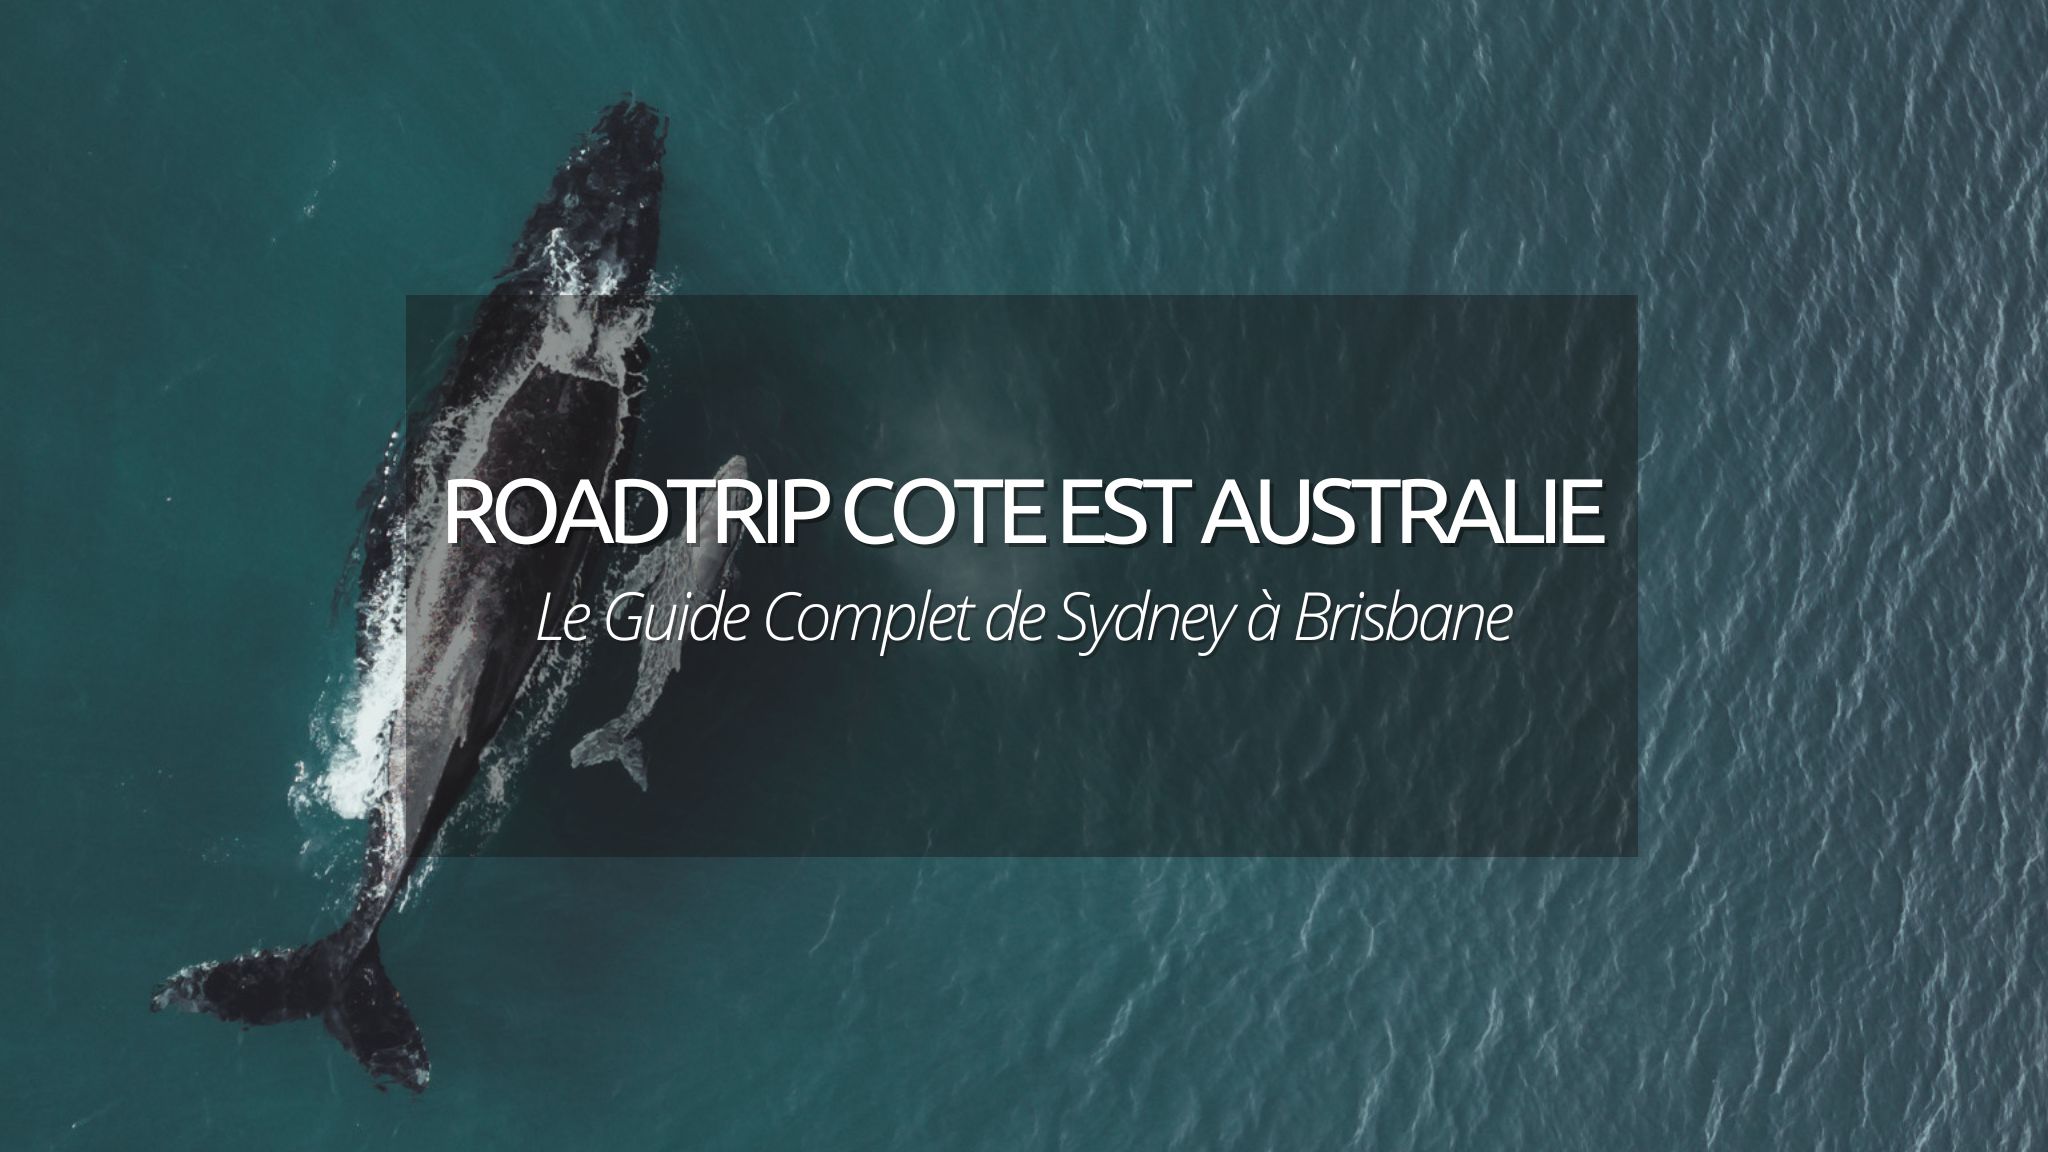 Road trip cote Est de l’Australie : itinéraire, budget, quand et comment, le GUIDE COMPLET pour votre voyage de Sydney à Brisbane